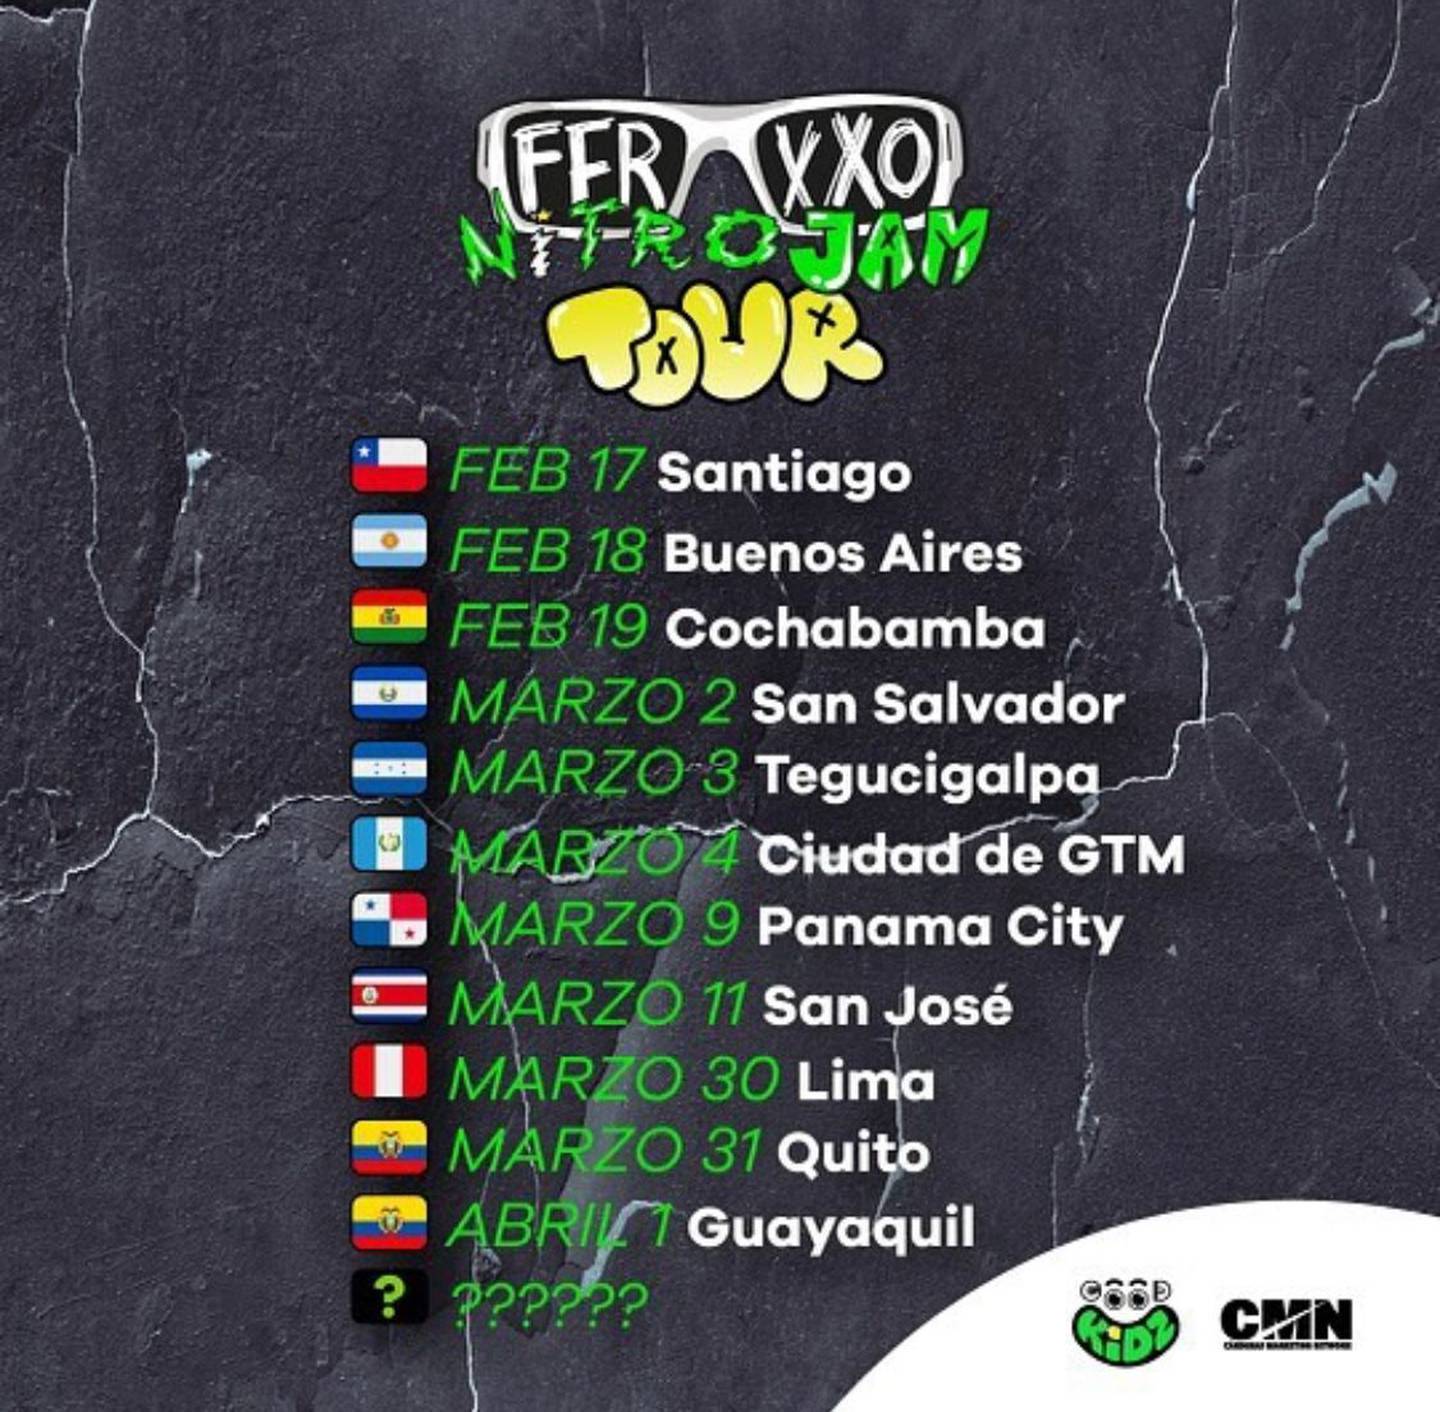 ¡El ferxxo viene a Ecuador! Estas son las fechas de su gira por nuestro